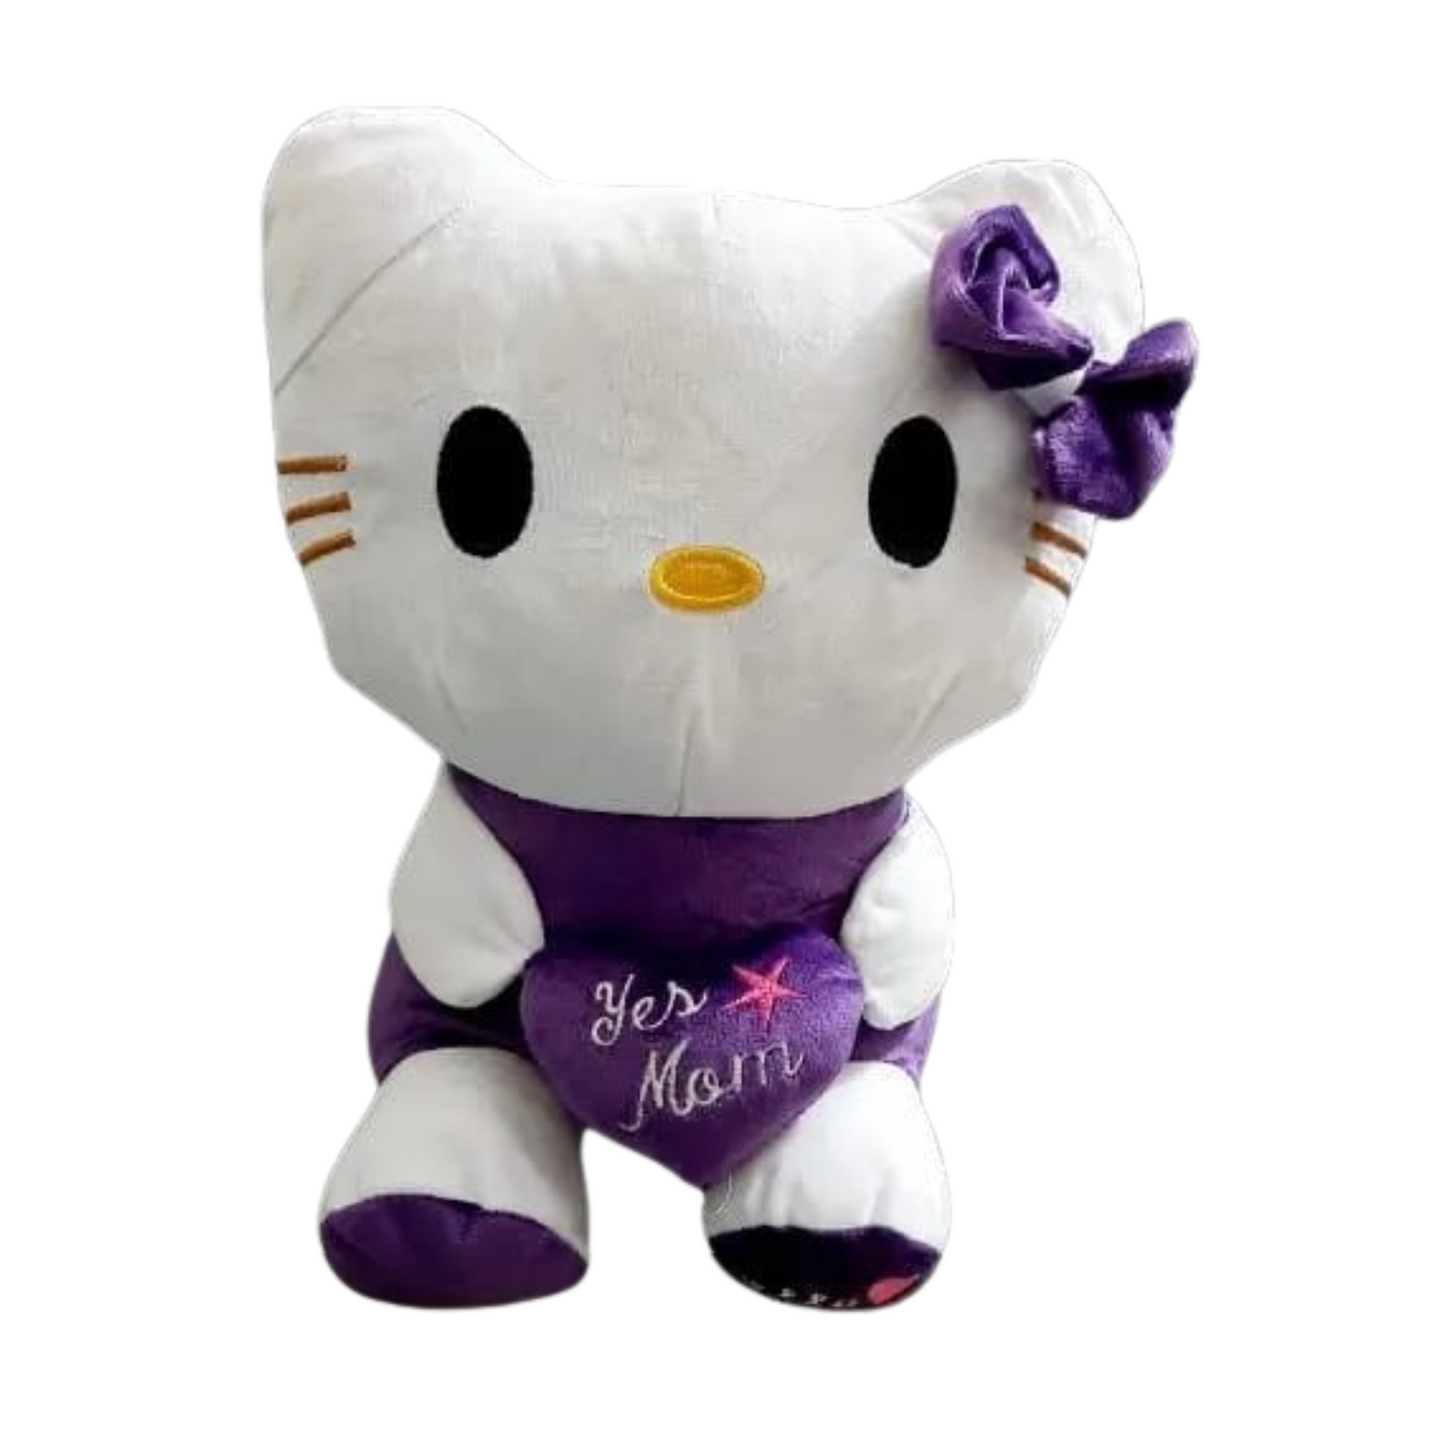 Hello Kitty Stuffed Toy